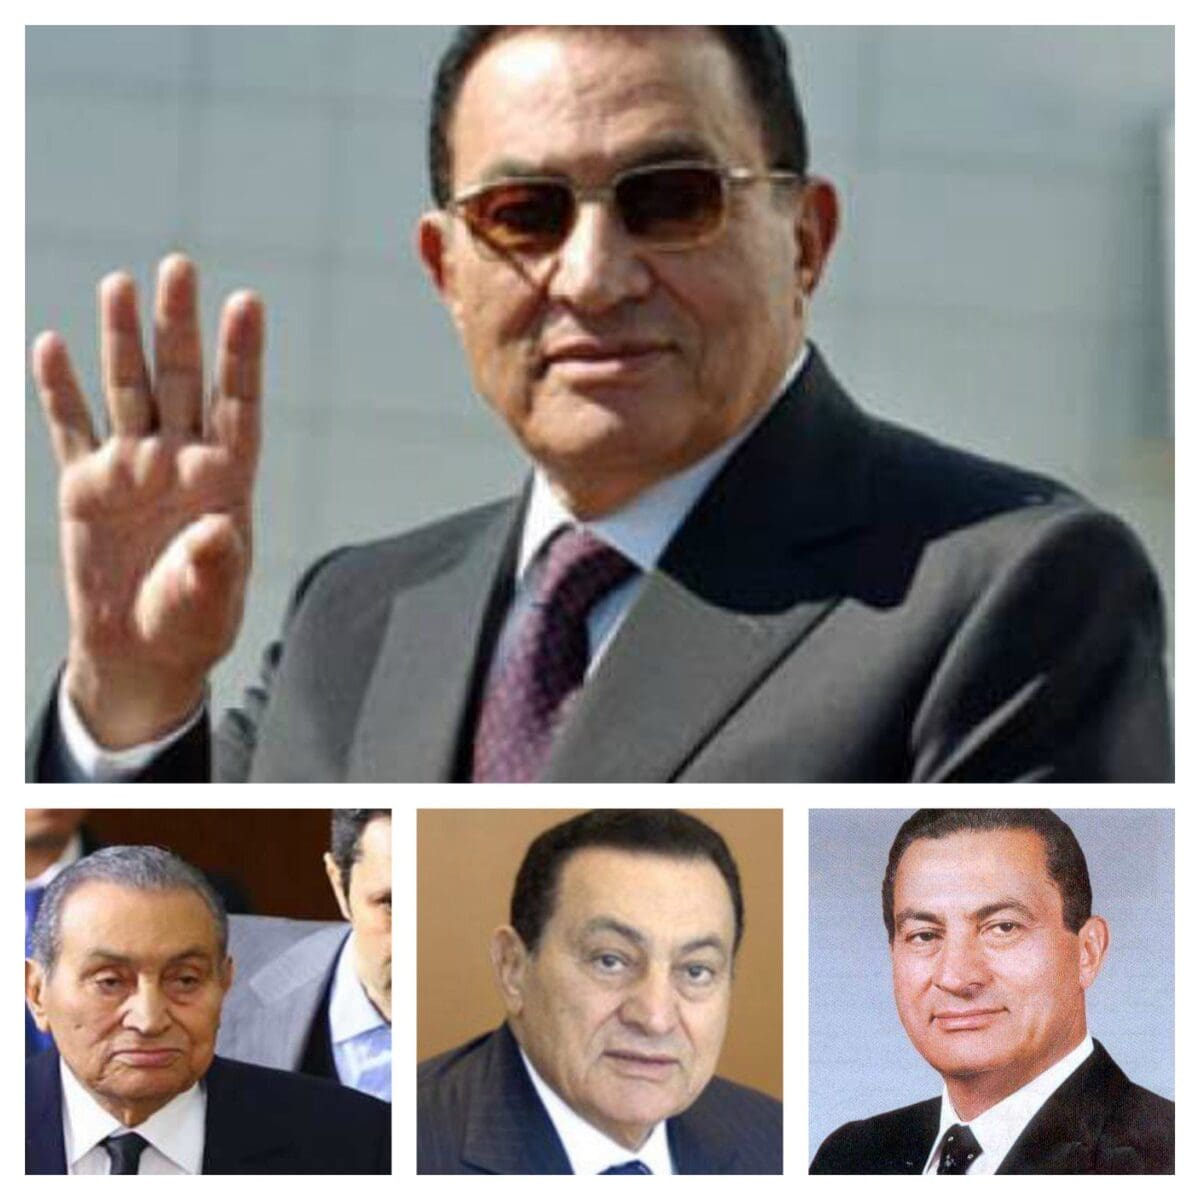 جنازة الرئيس الأسبق مبارك هل ستكون عسكرية أم مدنية ؟